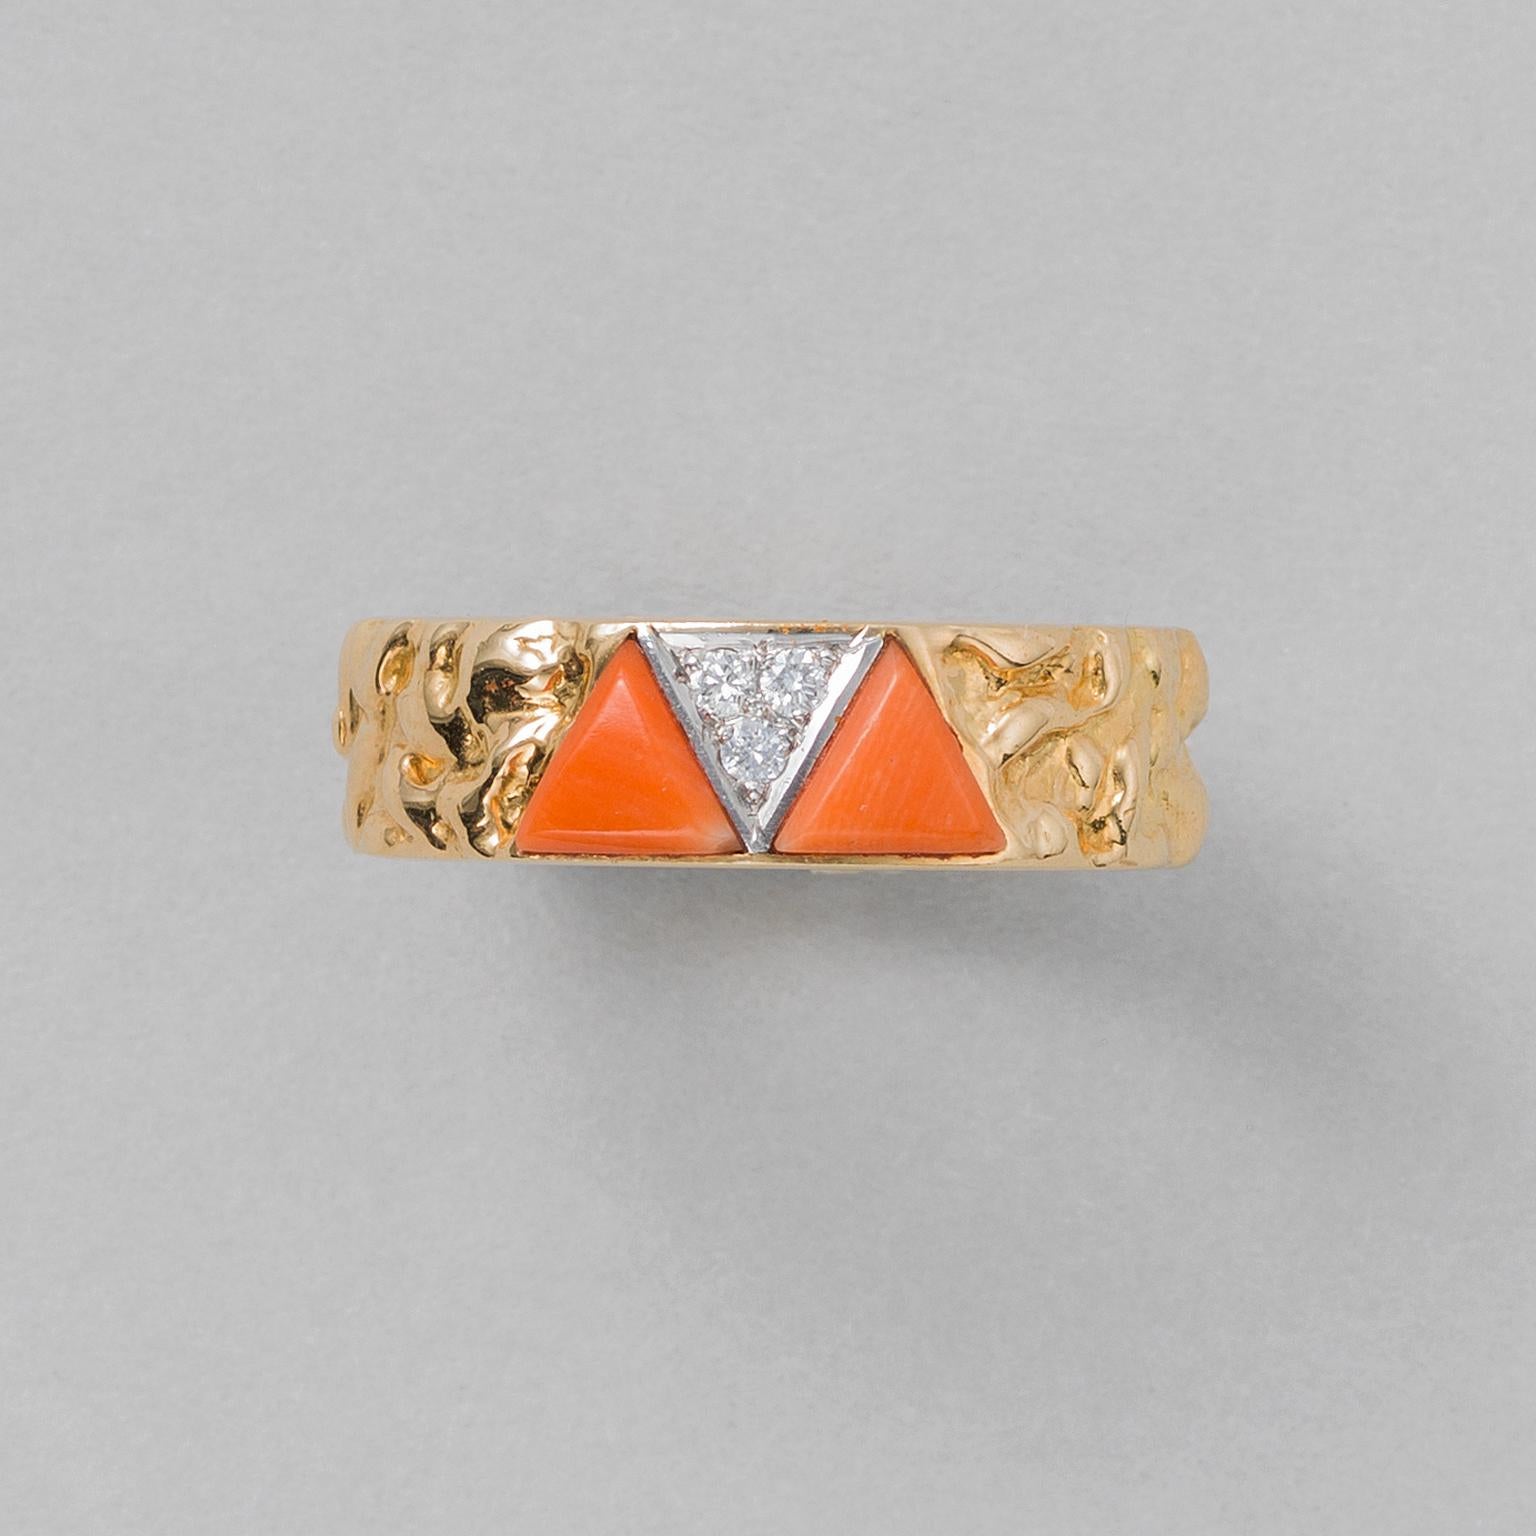 Ein Ring aus 18 Karat Gold mit unregelmäßiger Struktur, besetzt mit zwei dreieckigen Korallenstücken, dazwischen ein mit drei Brillanten besetztes Platindreieck, signiert und nummeriert: VCA NEW YORK, 862 1, hergestellt in Frankreich für Van Cleef &